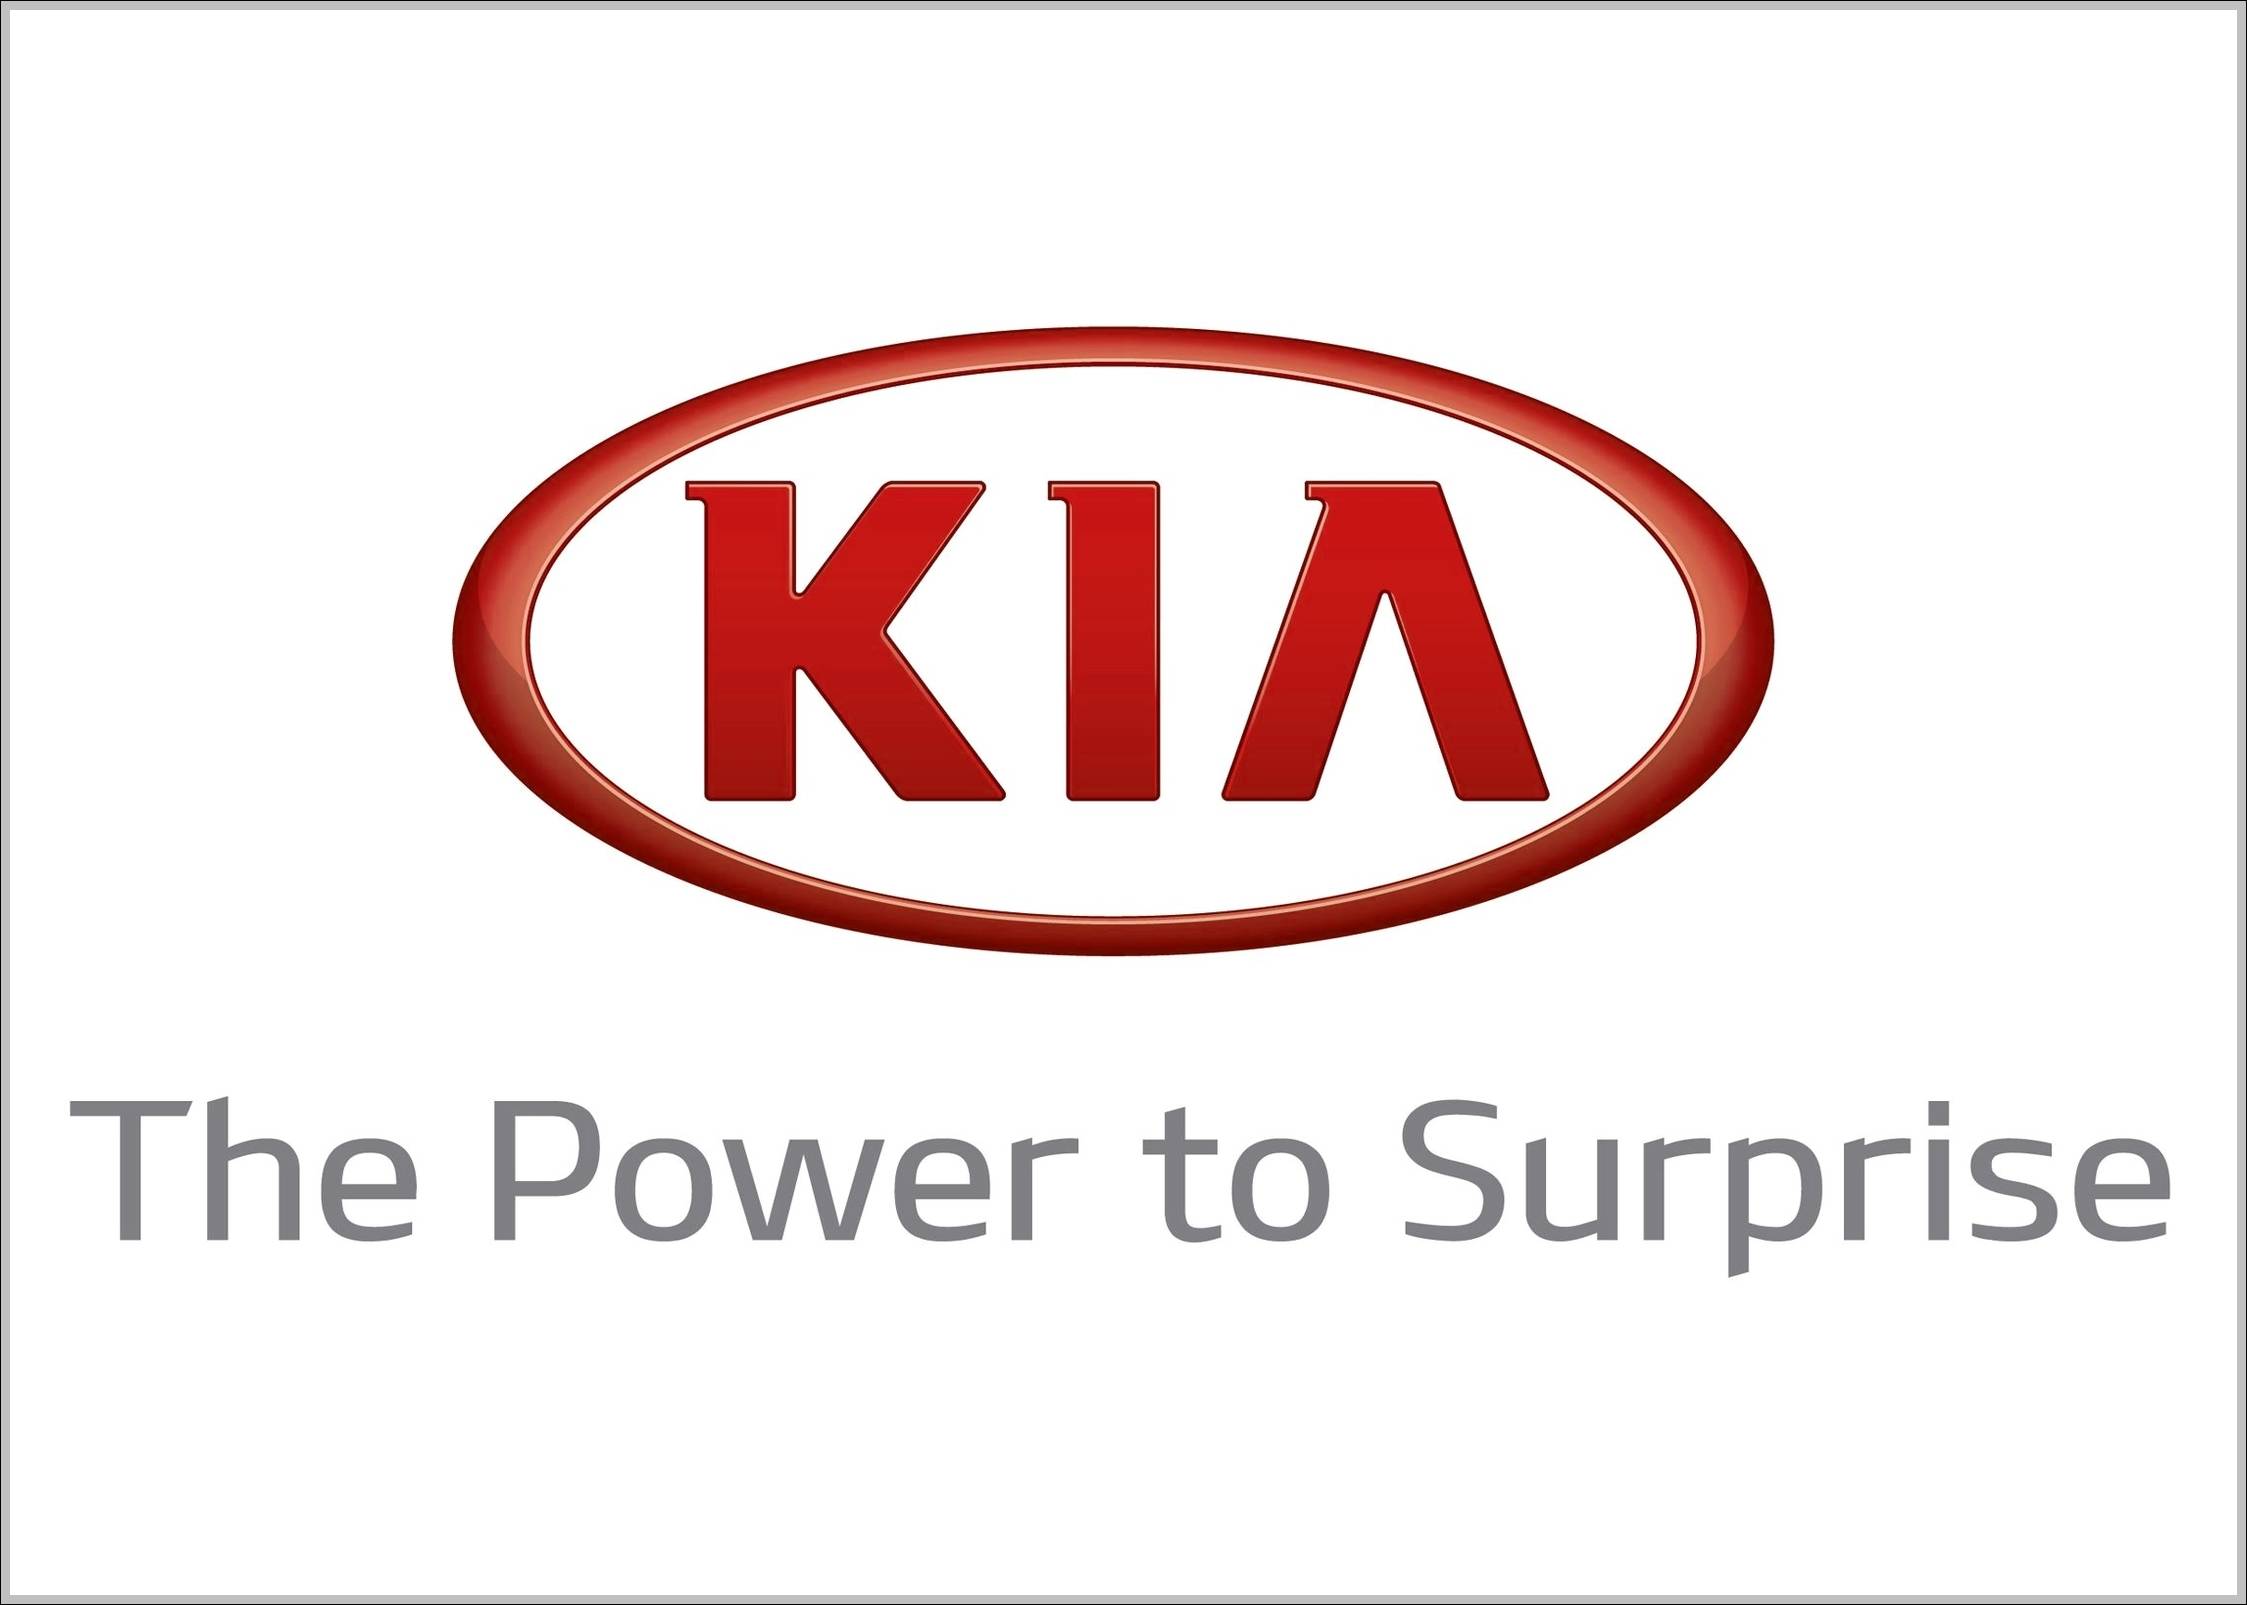 Kia logo slogan